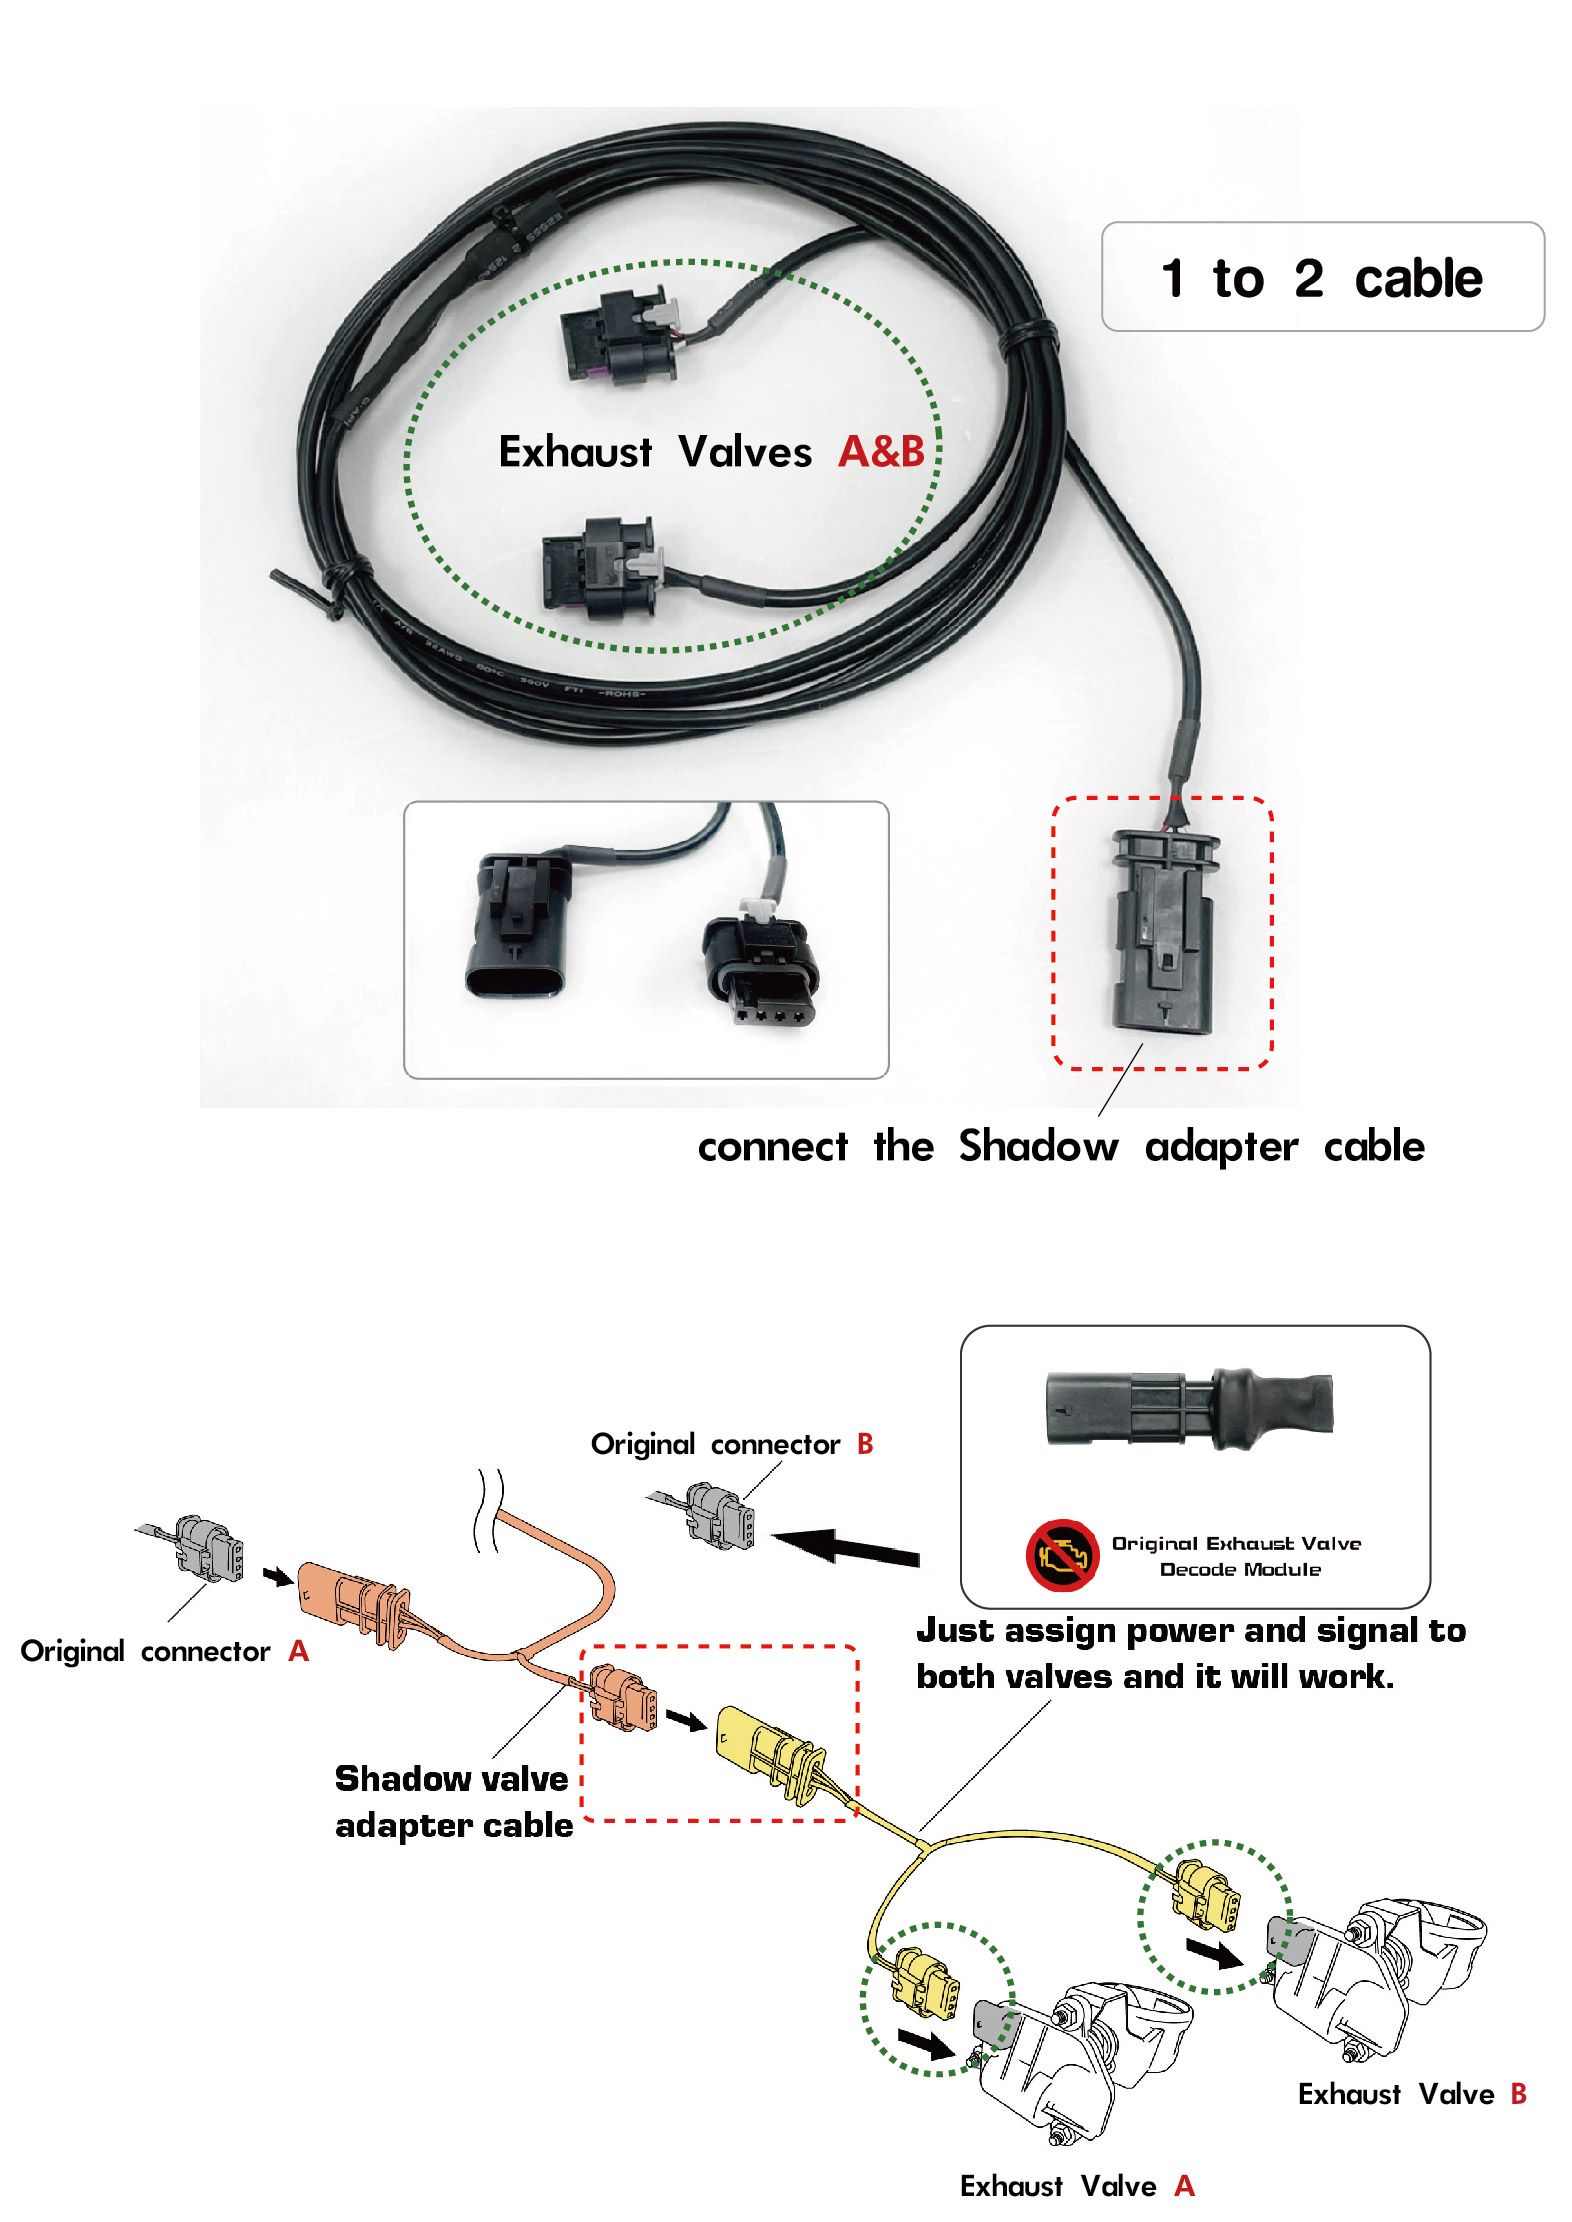 Instalación de cable 1 a 2 y módulo de decodificación